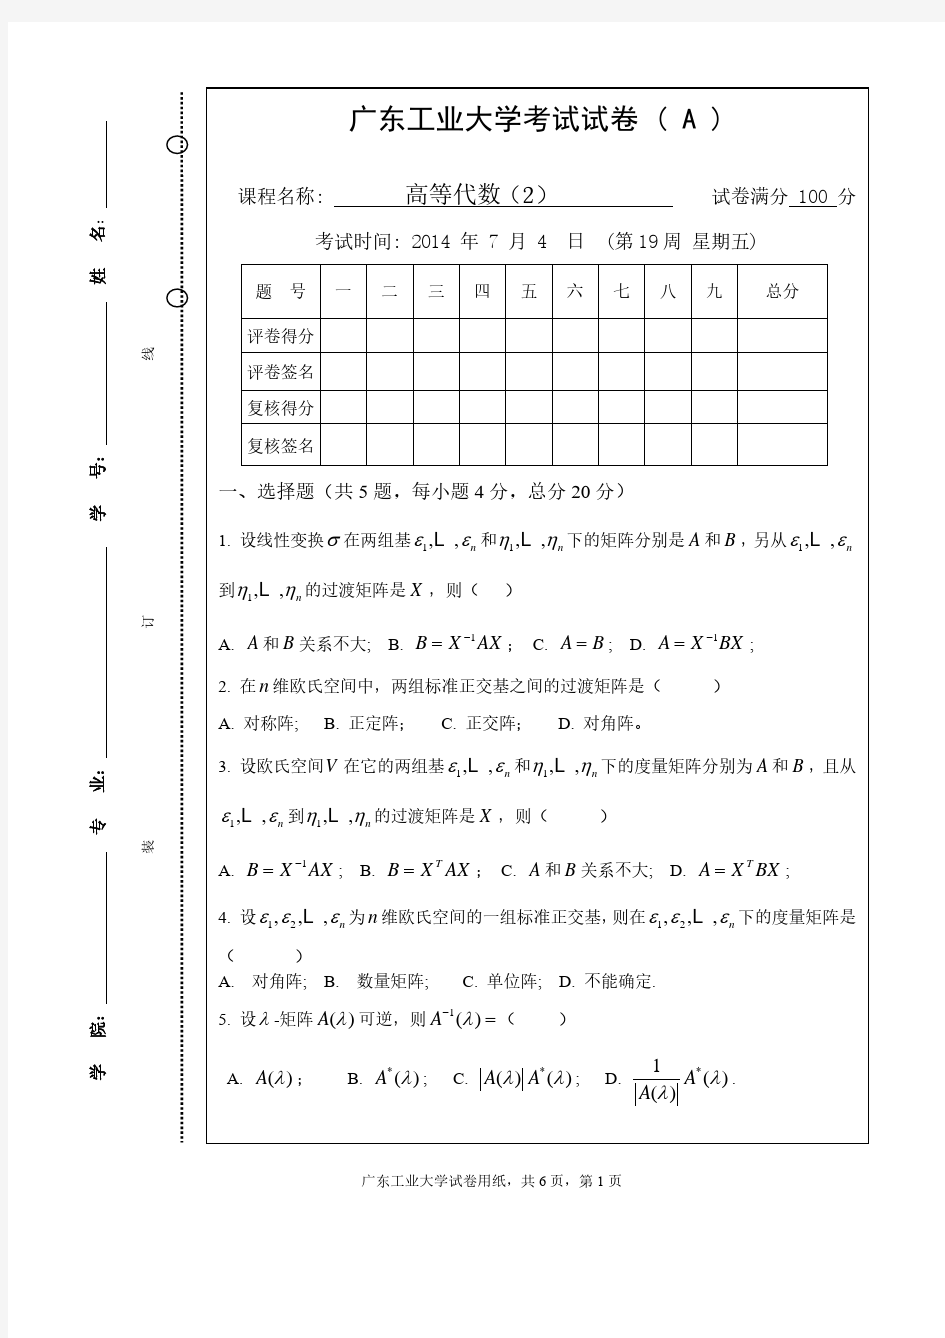 广东工业大学高等代数2试卷和答案-2014